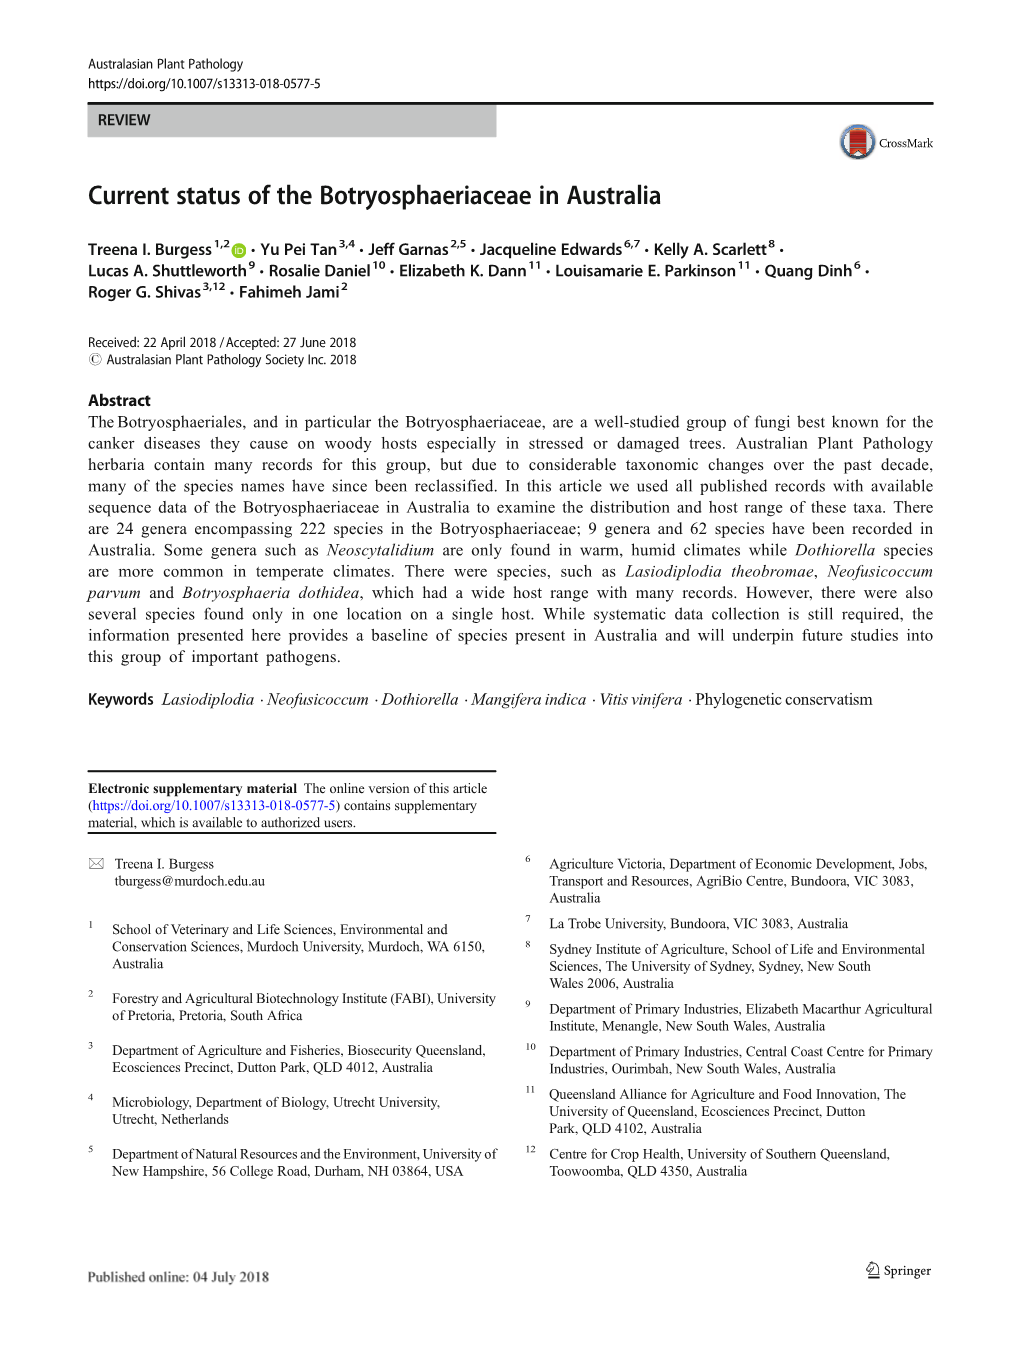 Current Status of the Botryosphaeriaceae in Australia